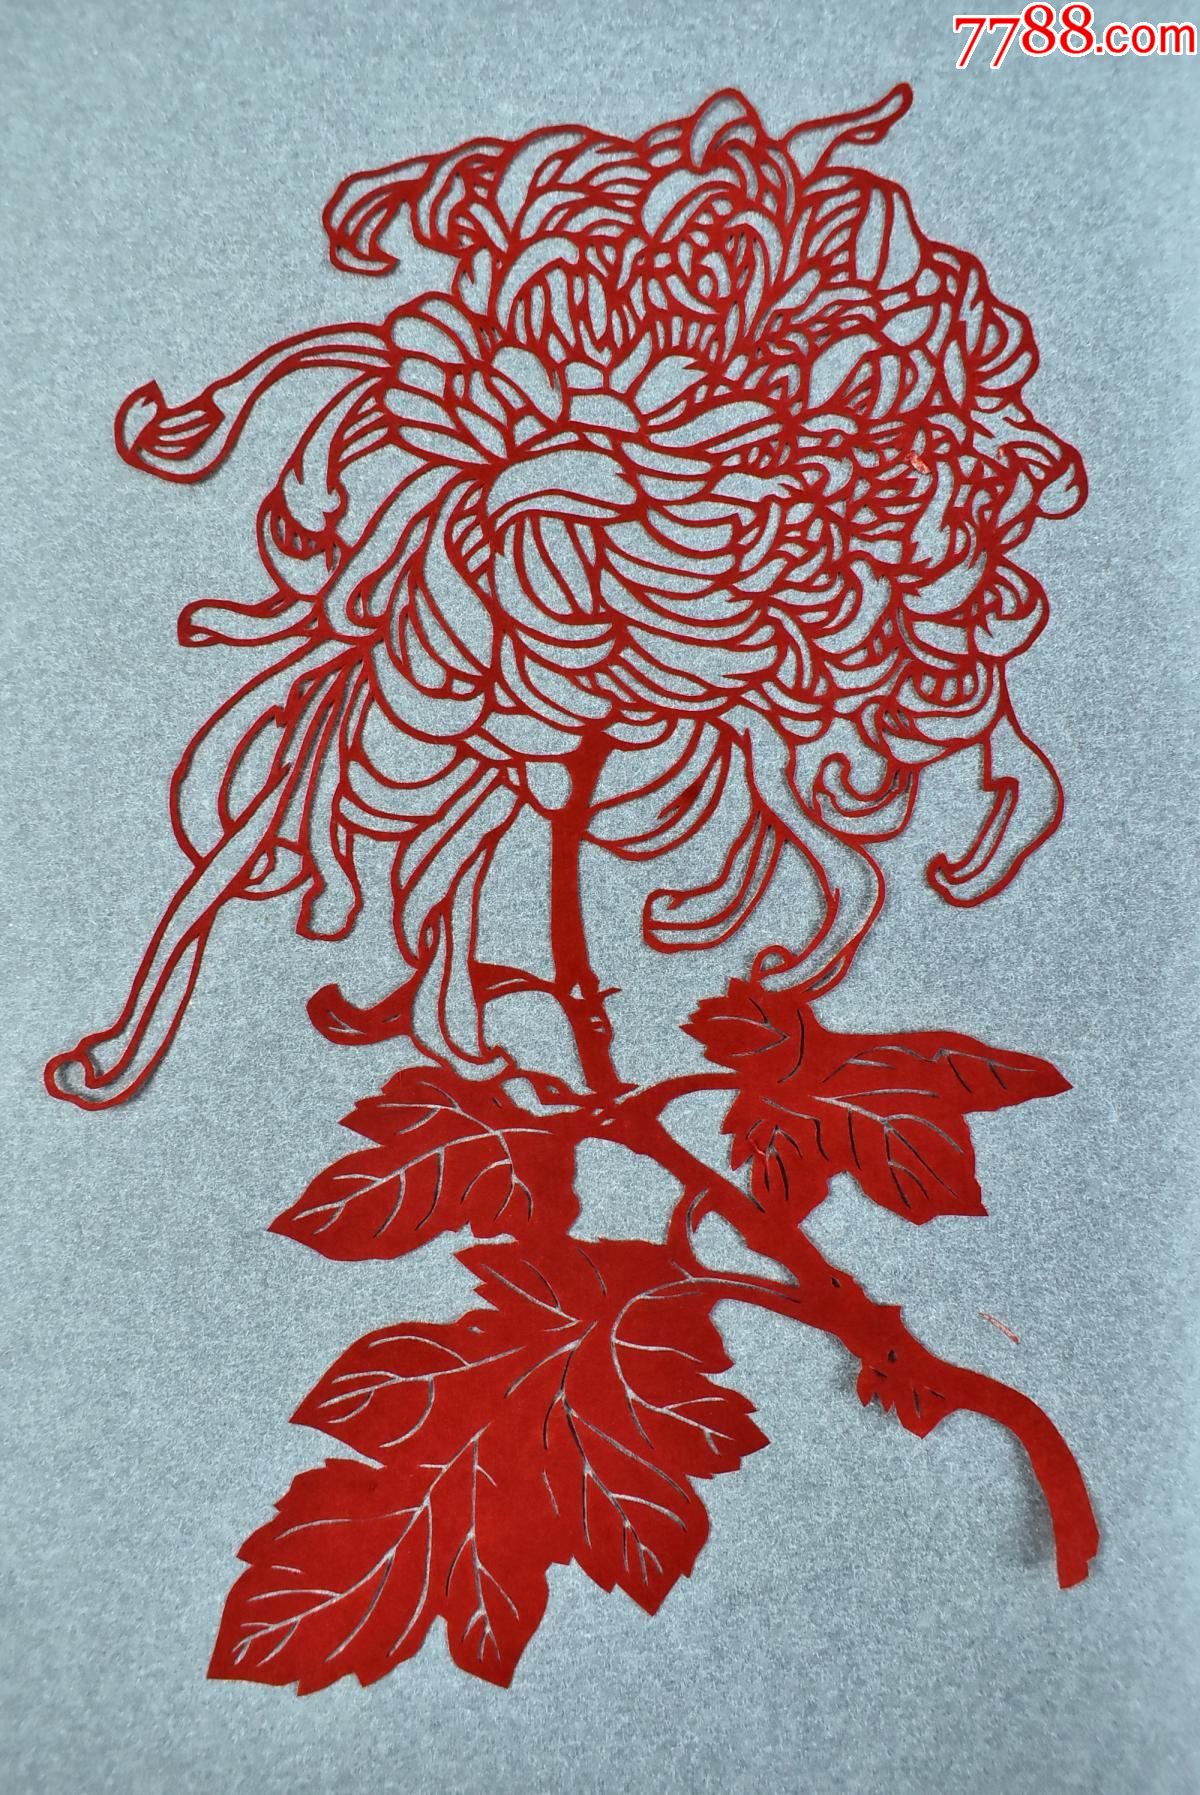 (丙7201)《中国扬州剪纸——大菊花》原护封6张单色剪纸各色菊花图案